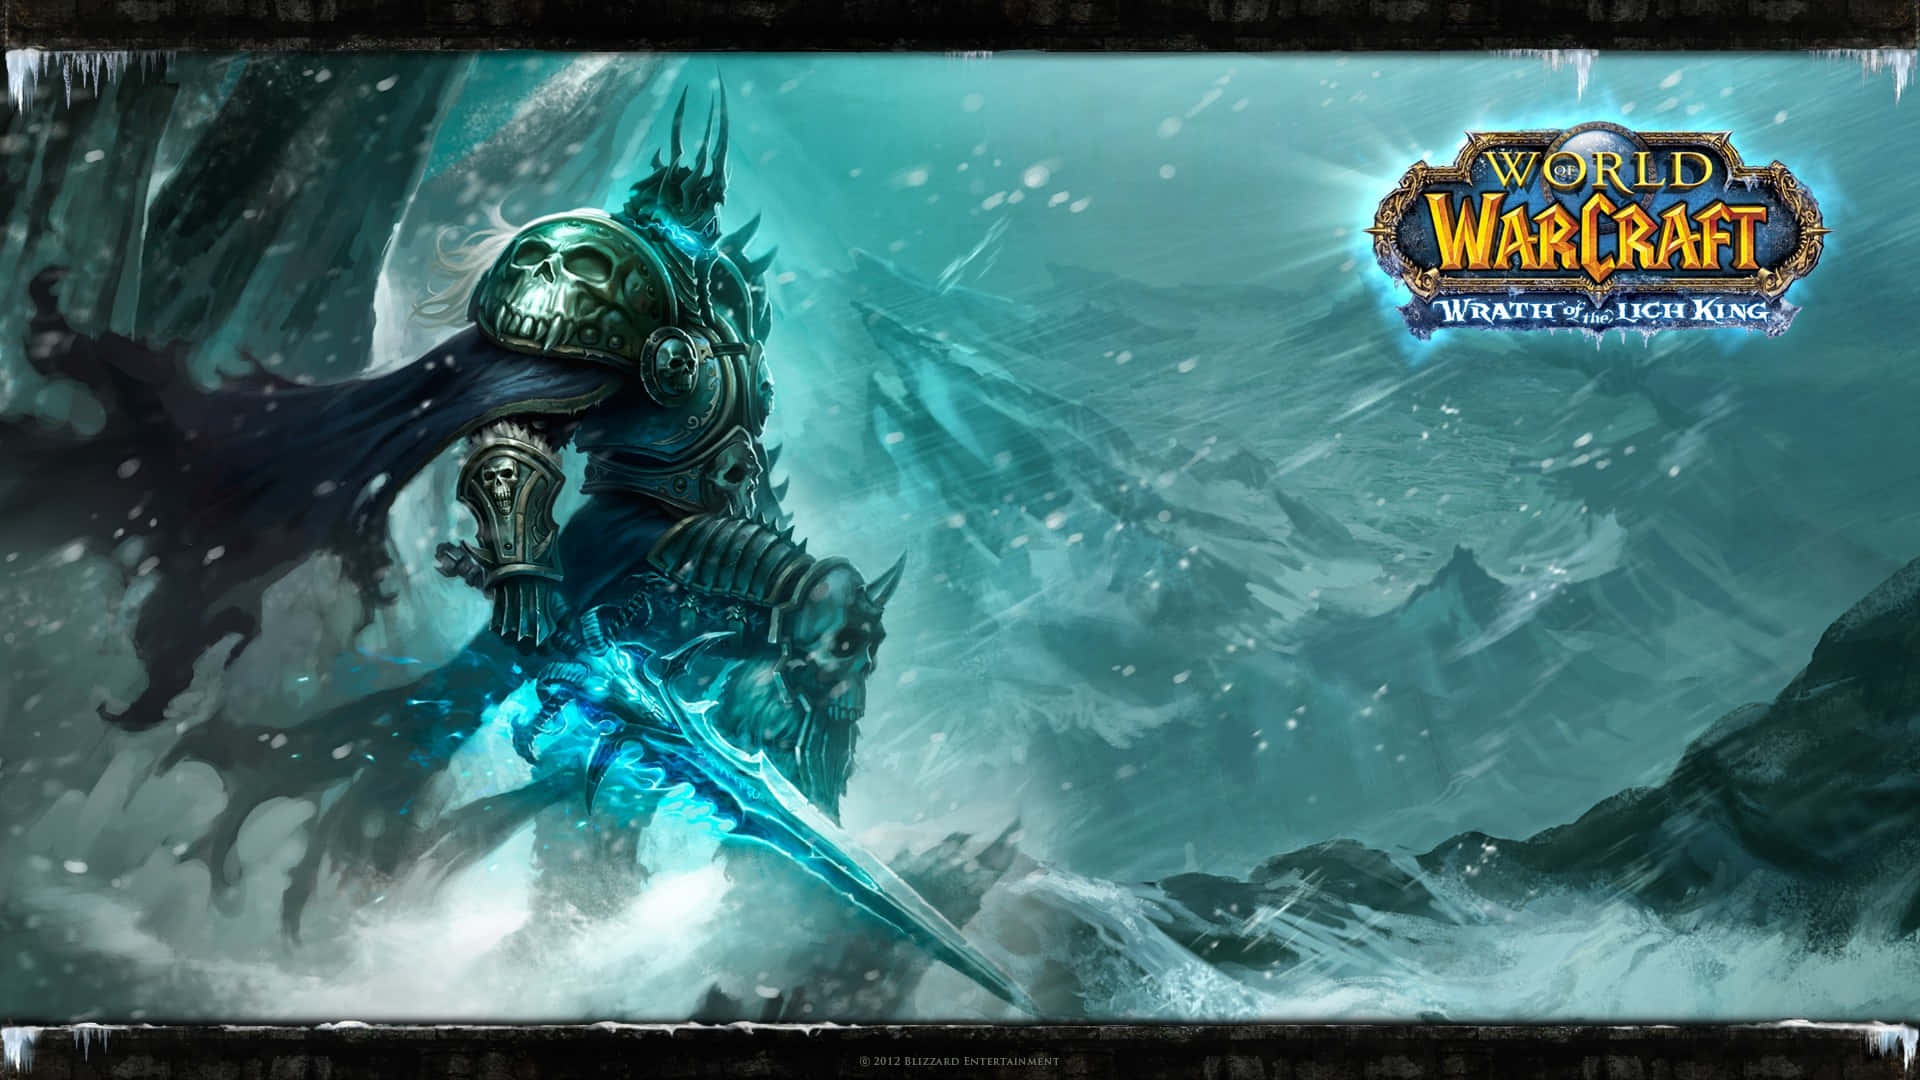 Sumérgeteen El Mundo Mágico De World Of Warcraft. Fondo de pantalla